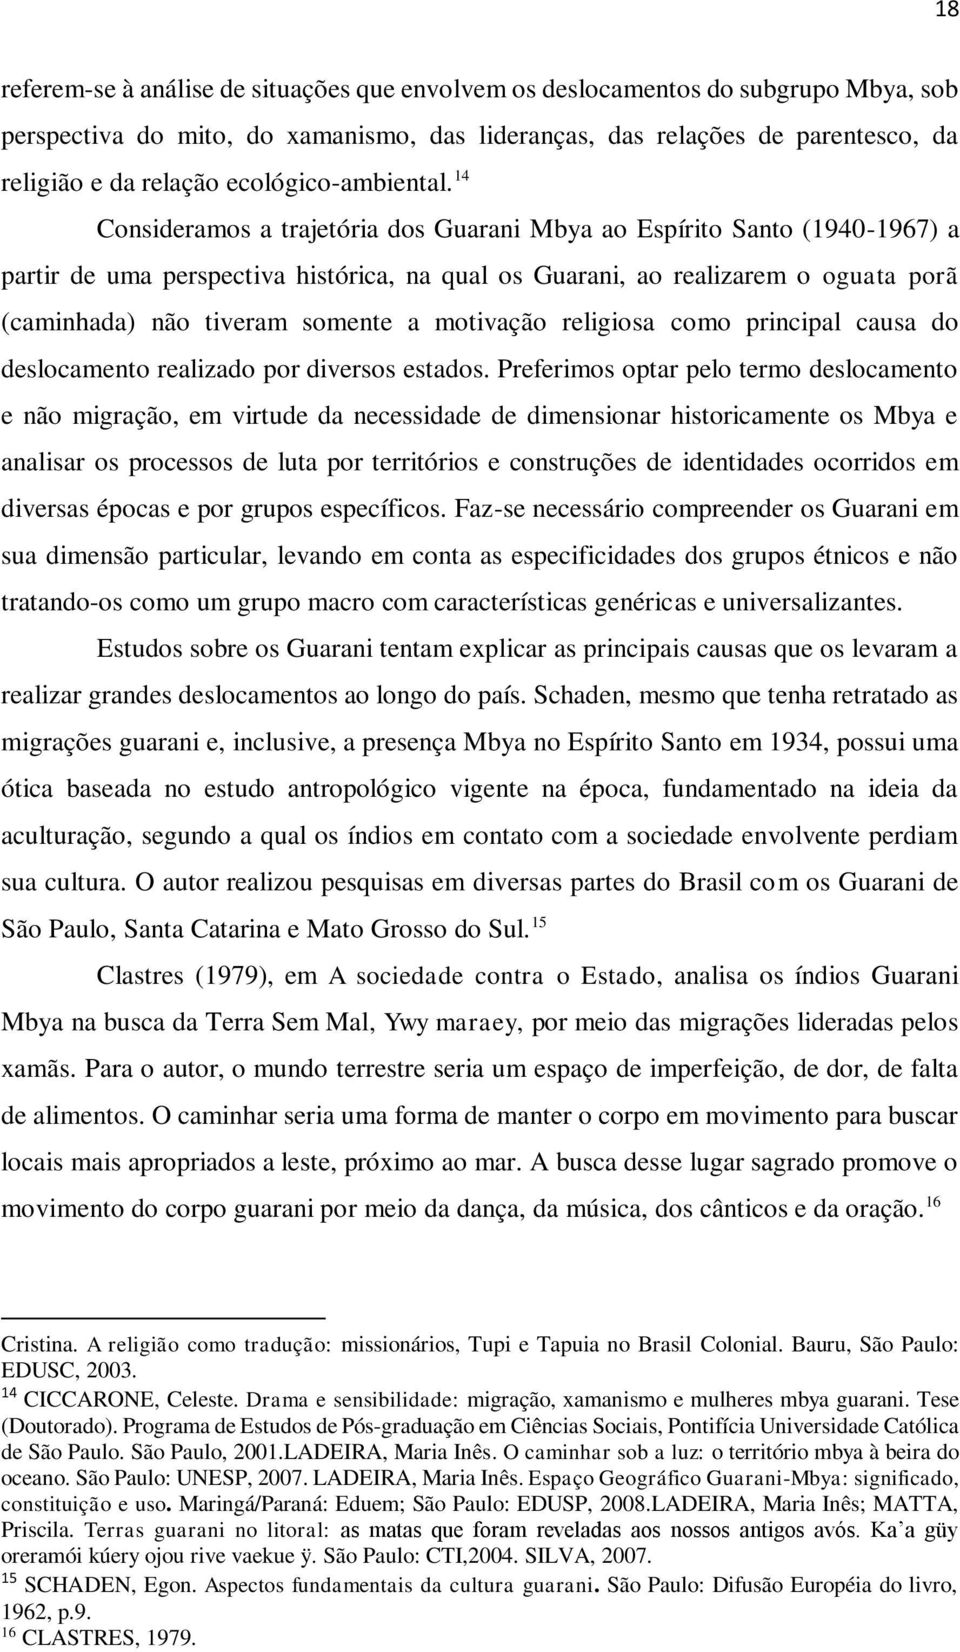 14 Consideramos a trajetória dos Guarani Mbya ao Espírito Santo (1940-1967) a partir de uma perspectiva histórica, na qual os Guarani, ao realizarem o oguata porã (caminhada) não tiveram somente a